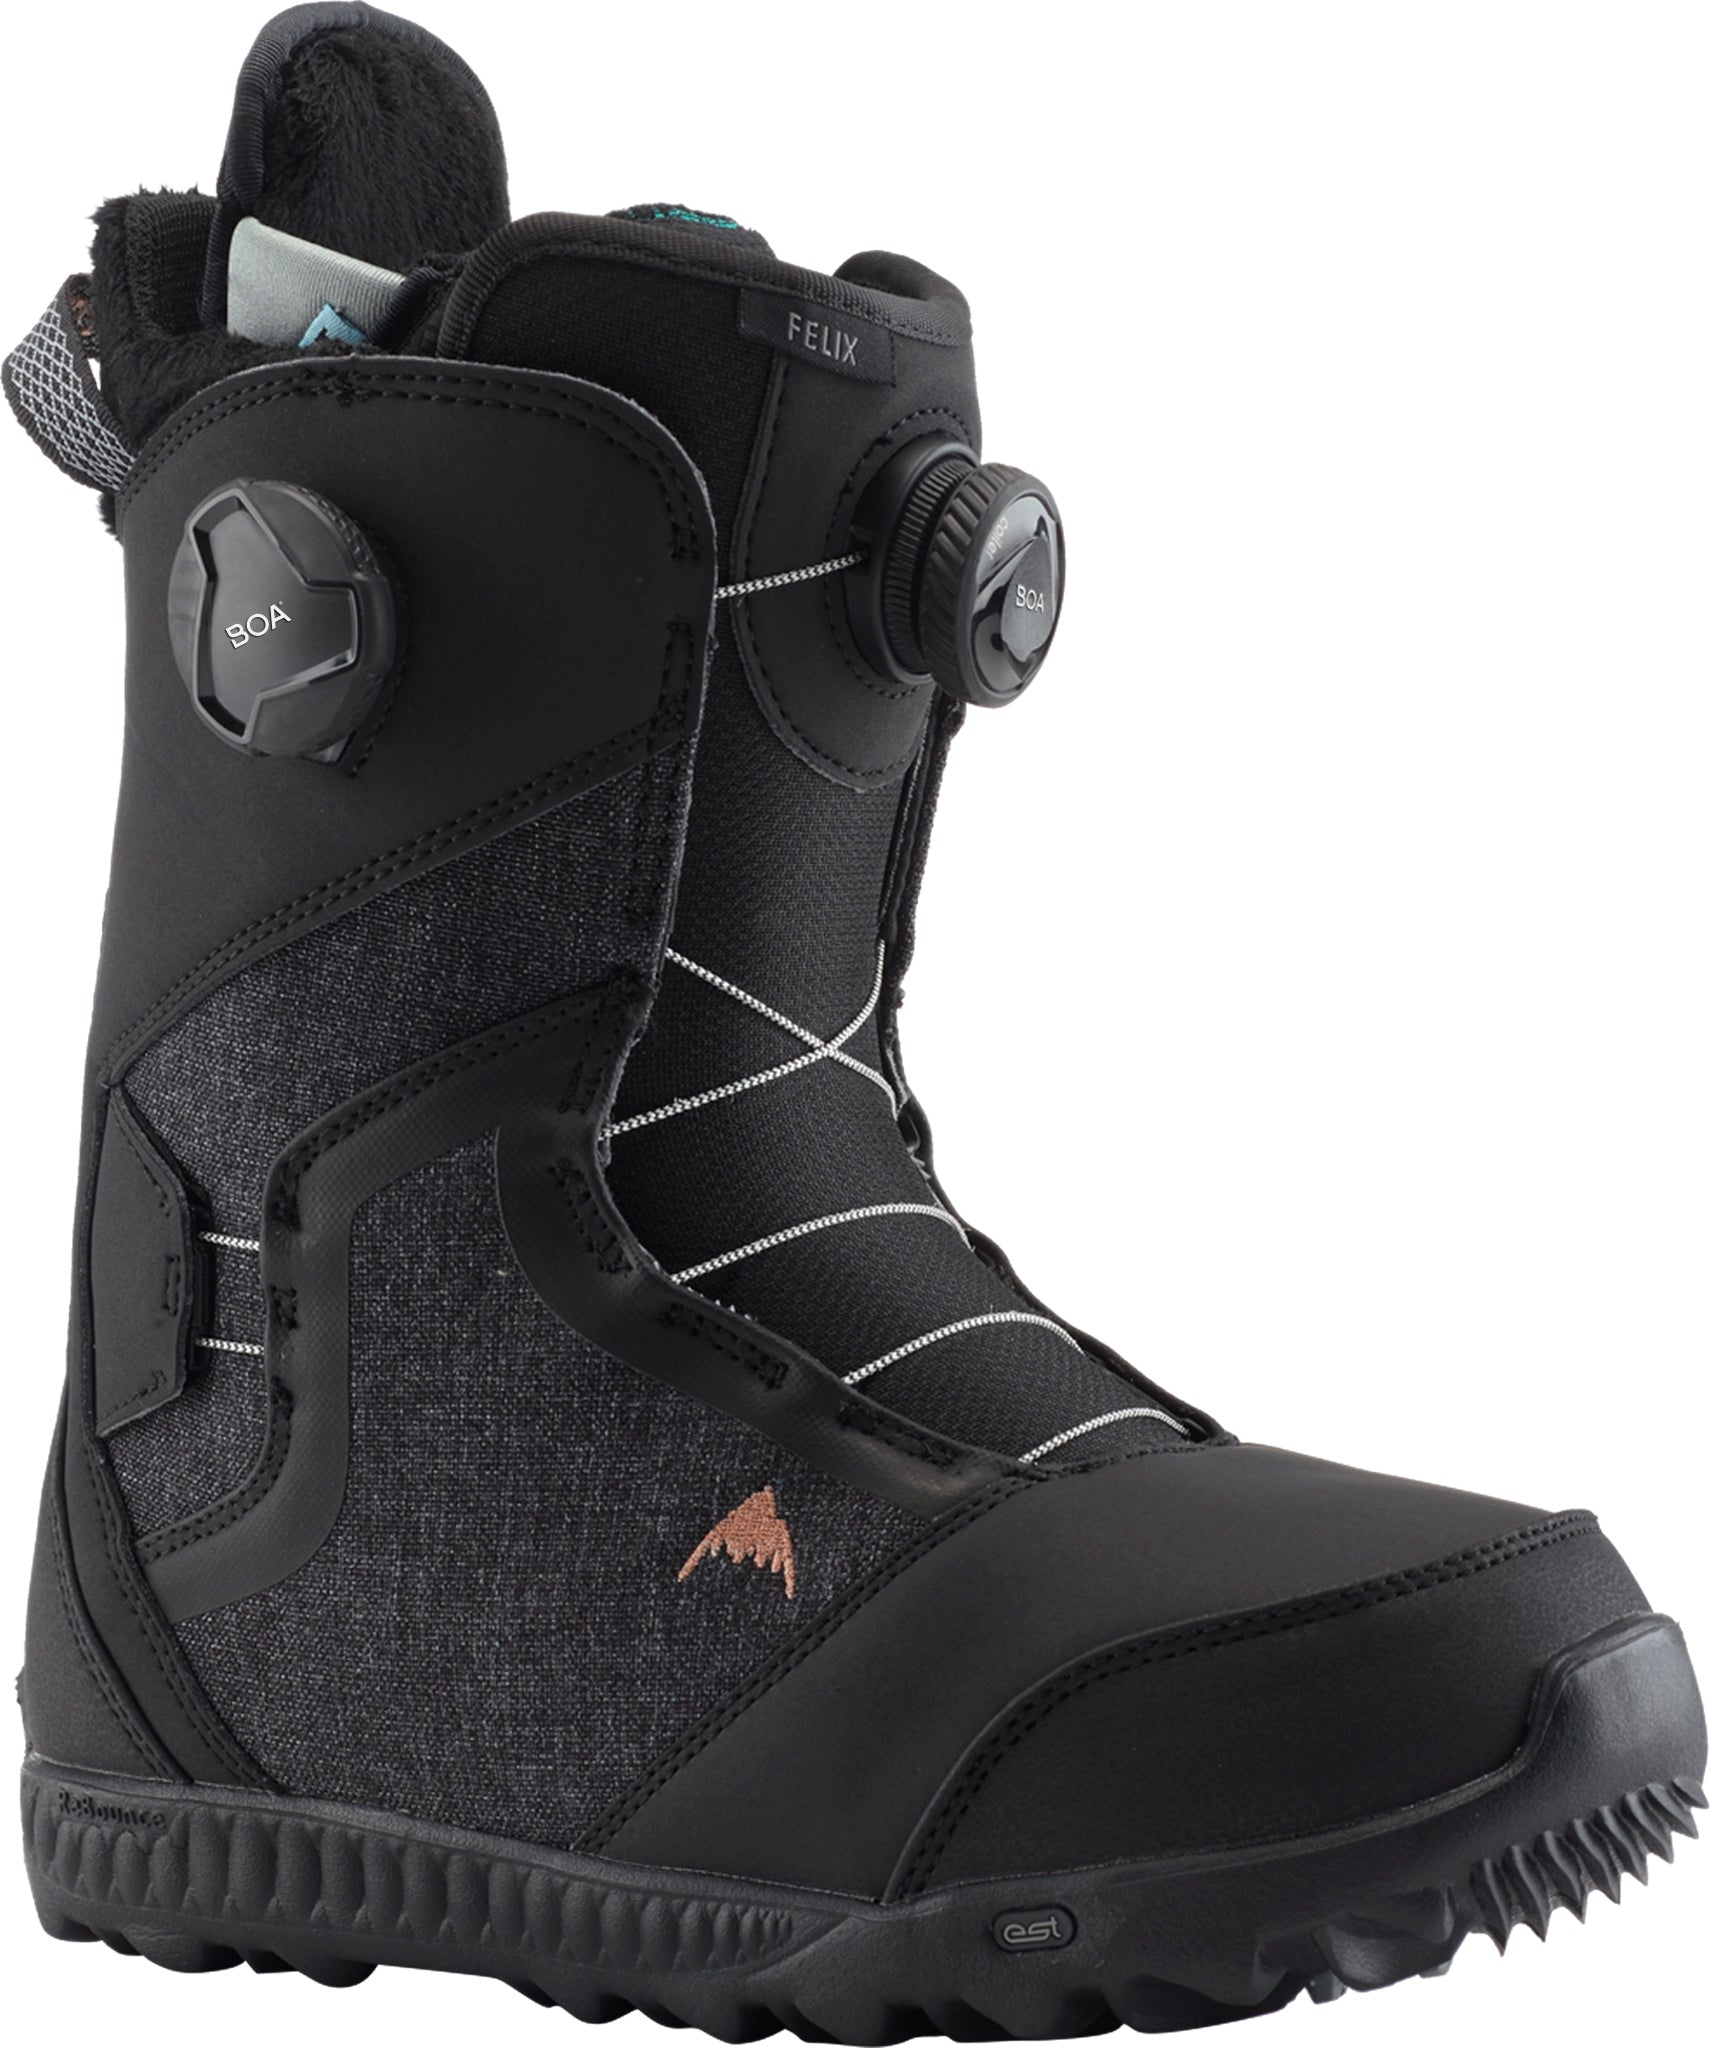 Burton Felix BOA Snowboard Boots - Women's | Altitude Sports